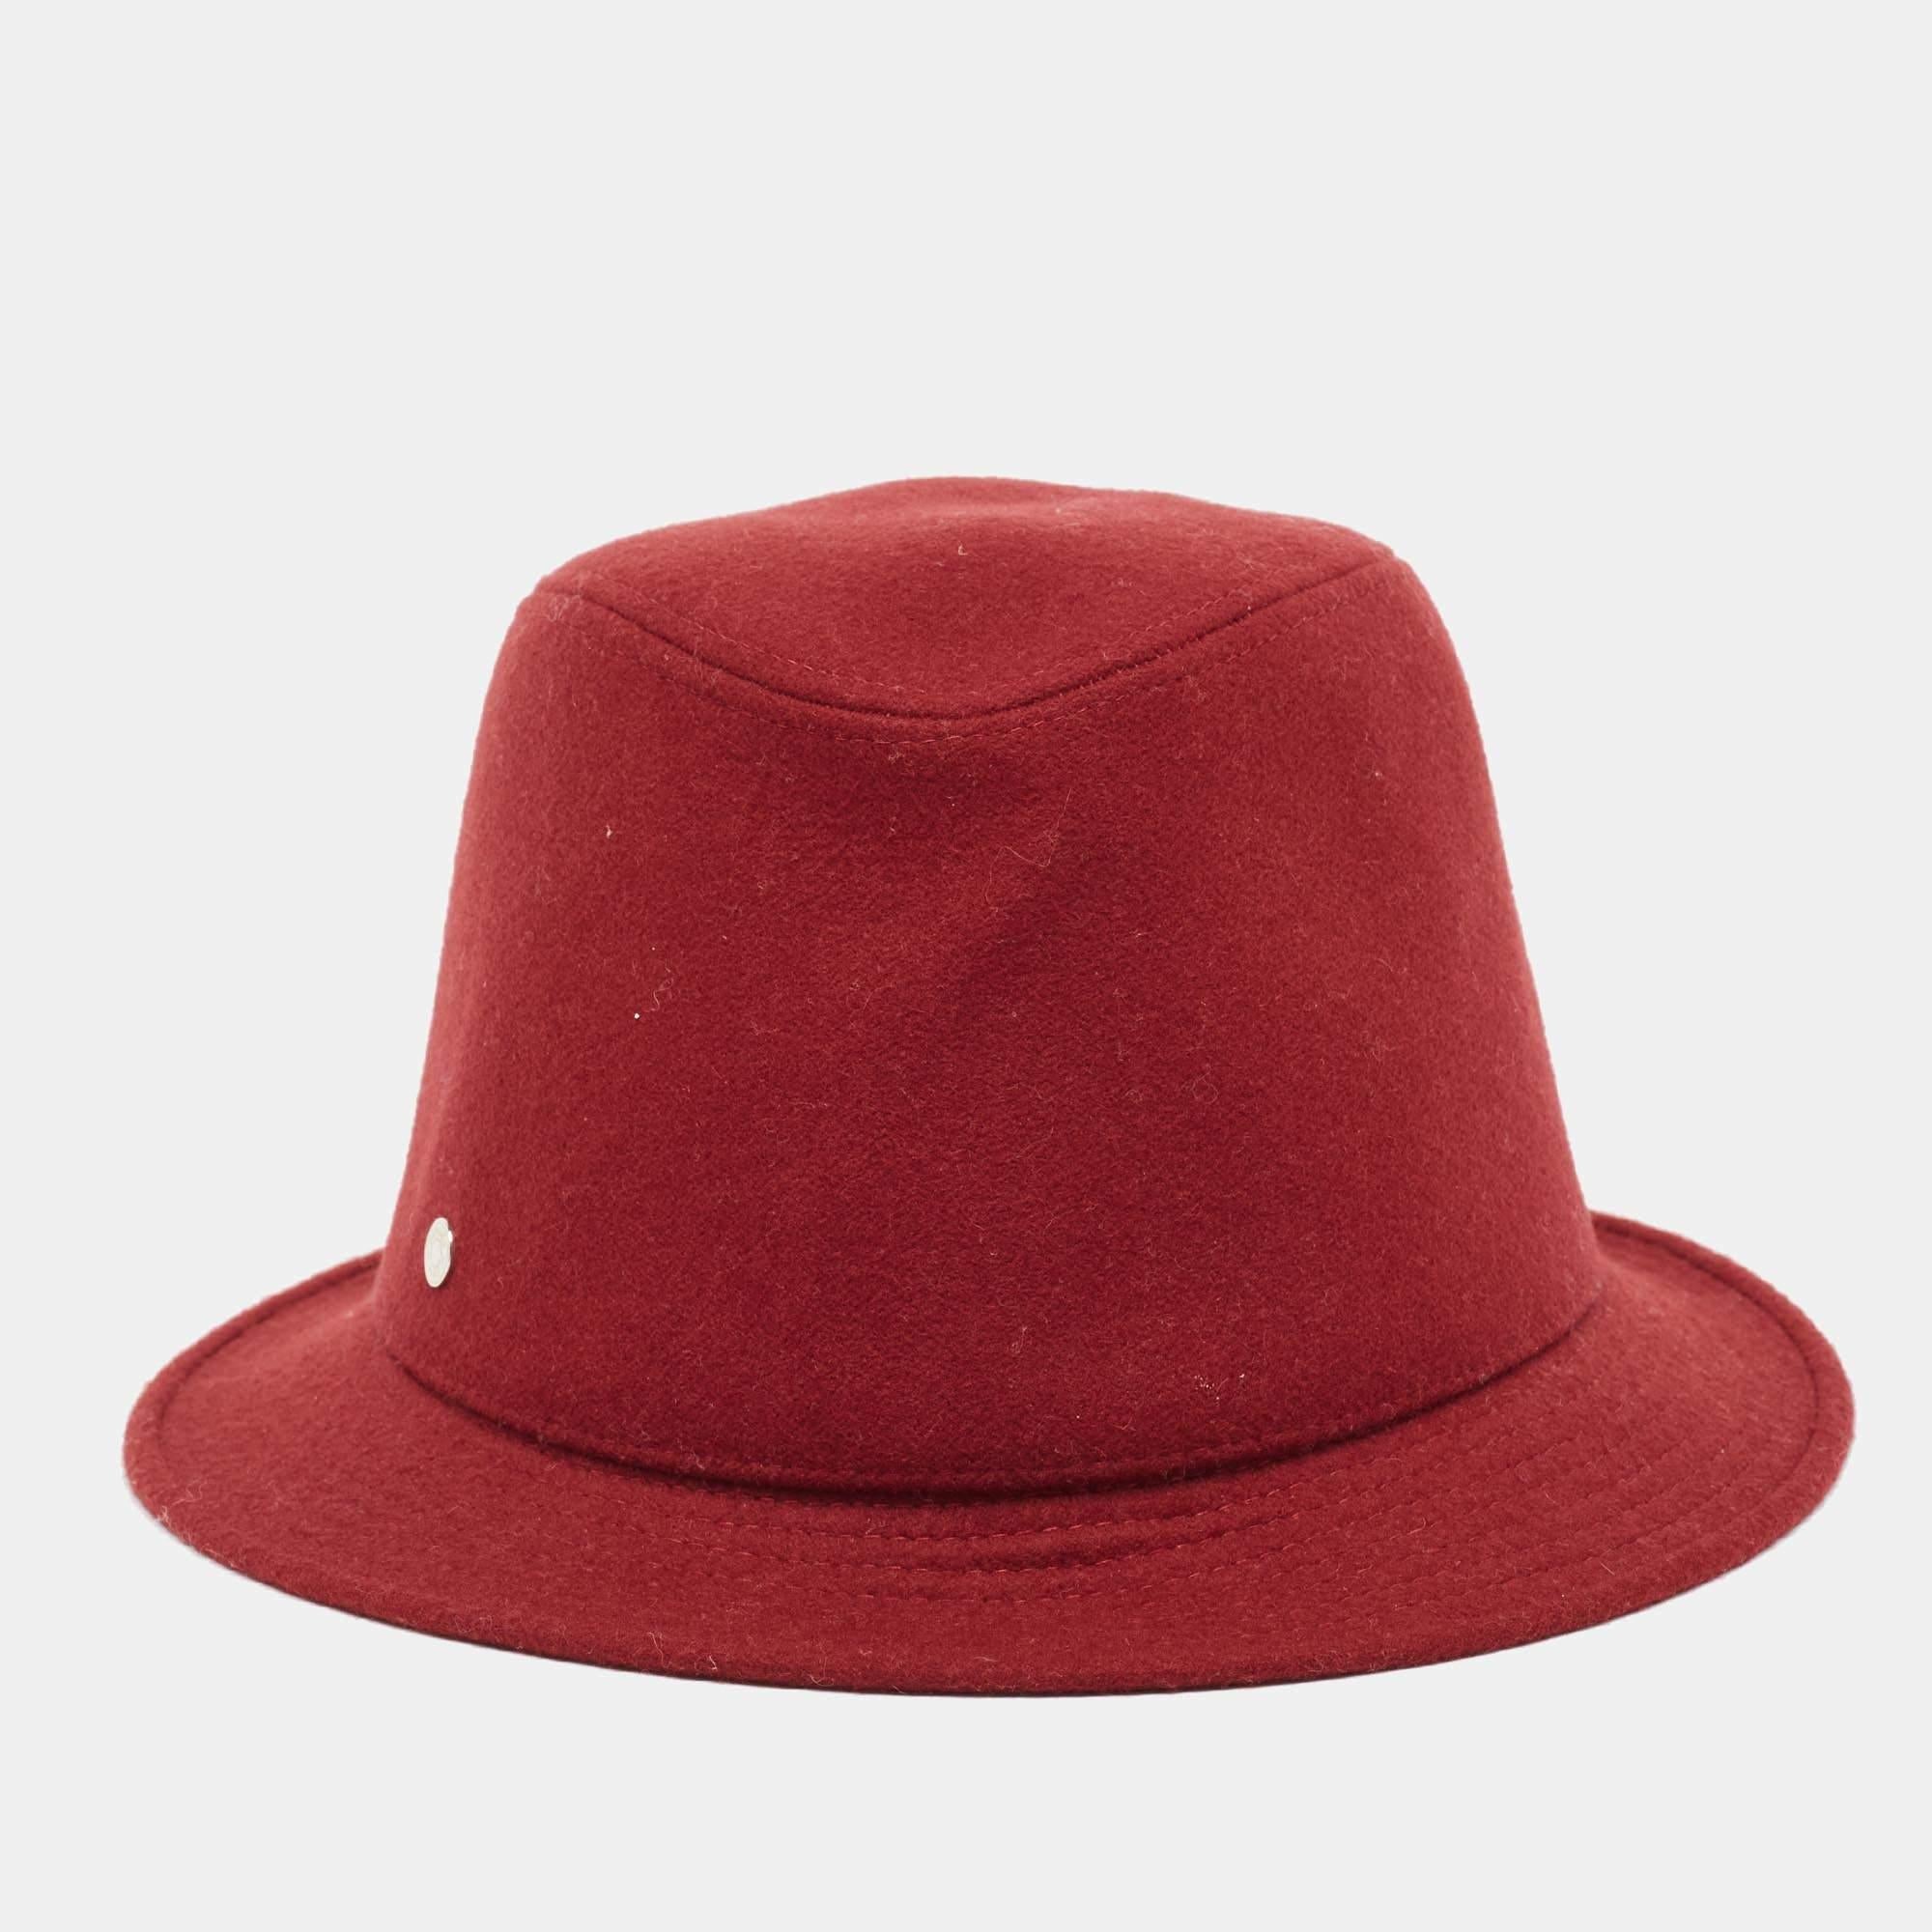 L'utilisation du cachemire, la teinte rouge et l'accent métallique de la marque s'associent pour créer ce chapeau Hermès. Un chapeau comme celui-ci est un élément de style essentiel qui rehaussera votre jeu d'accessoires encore et encore.

